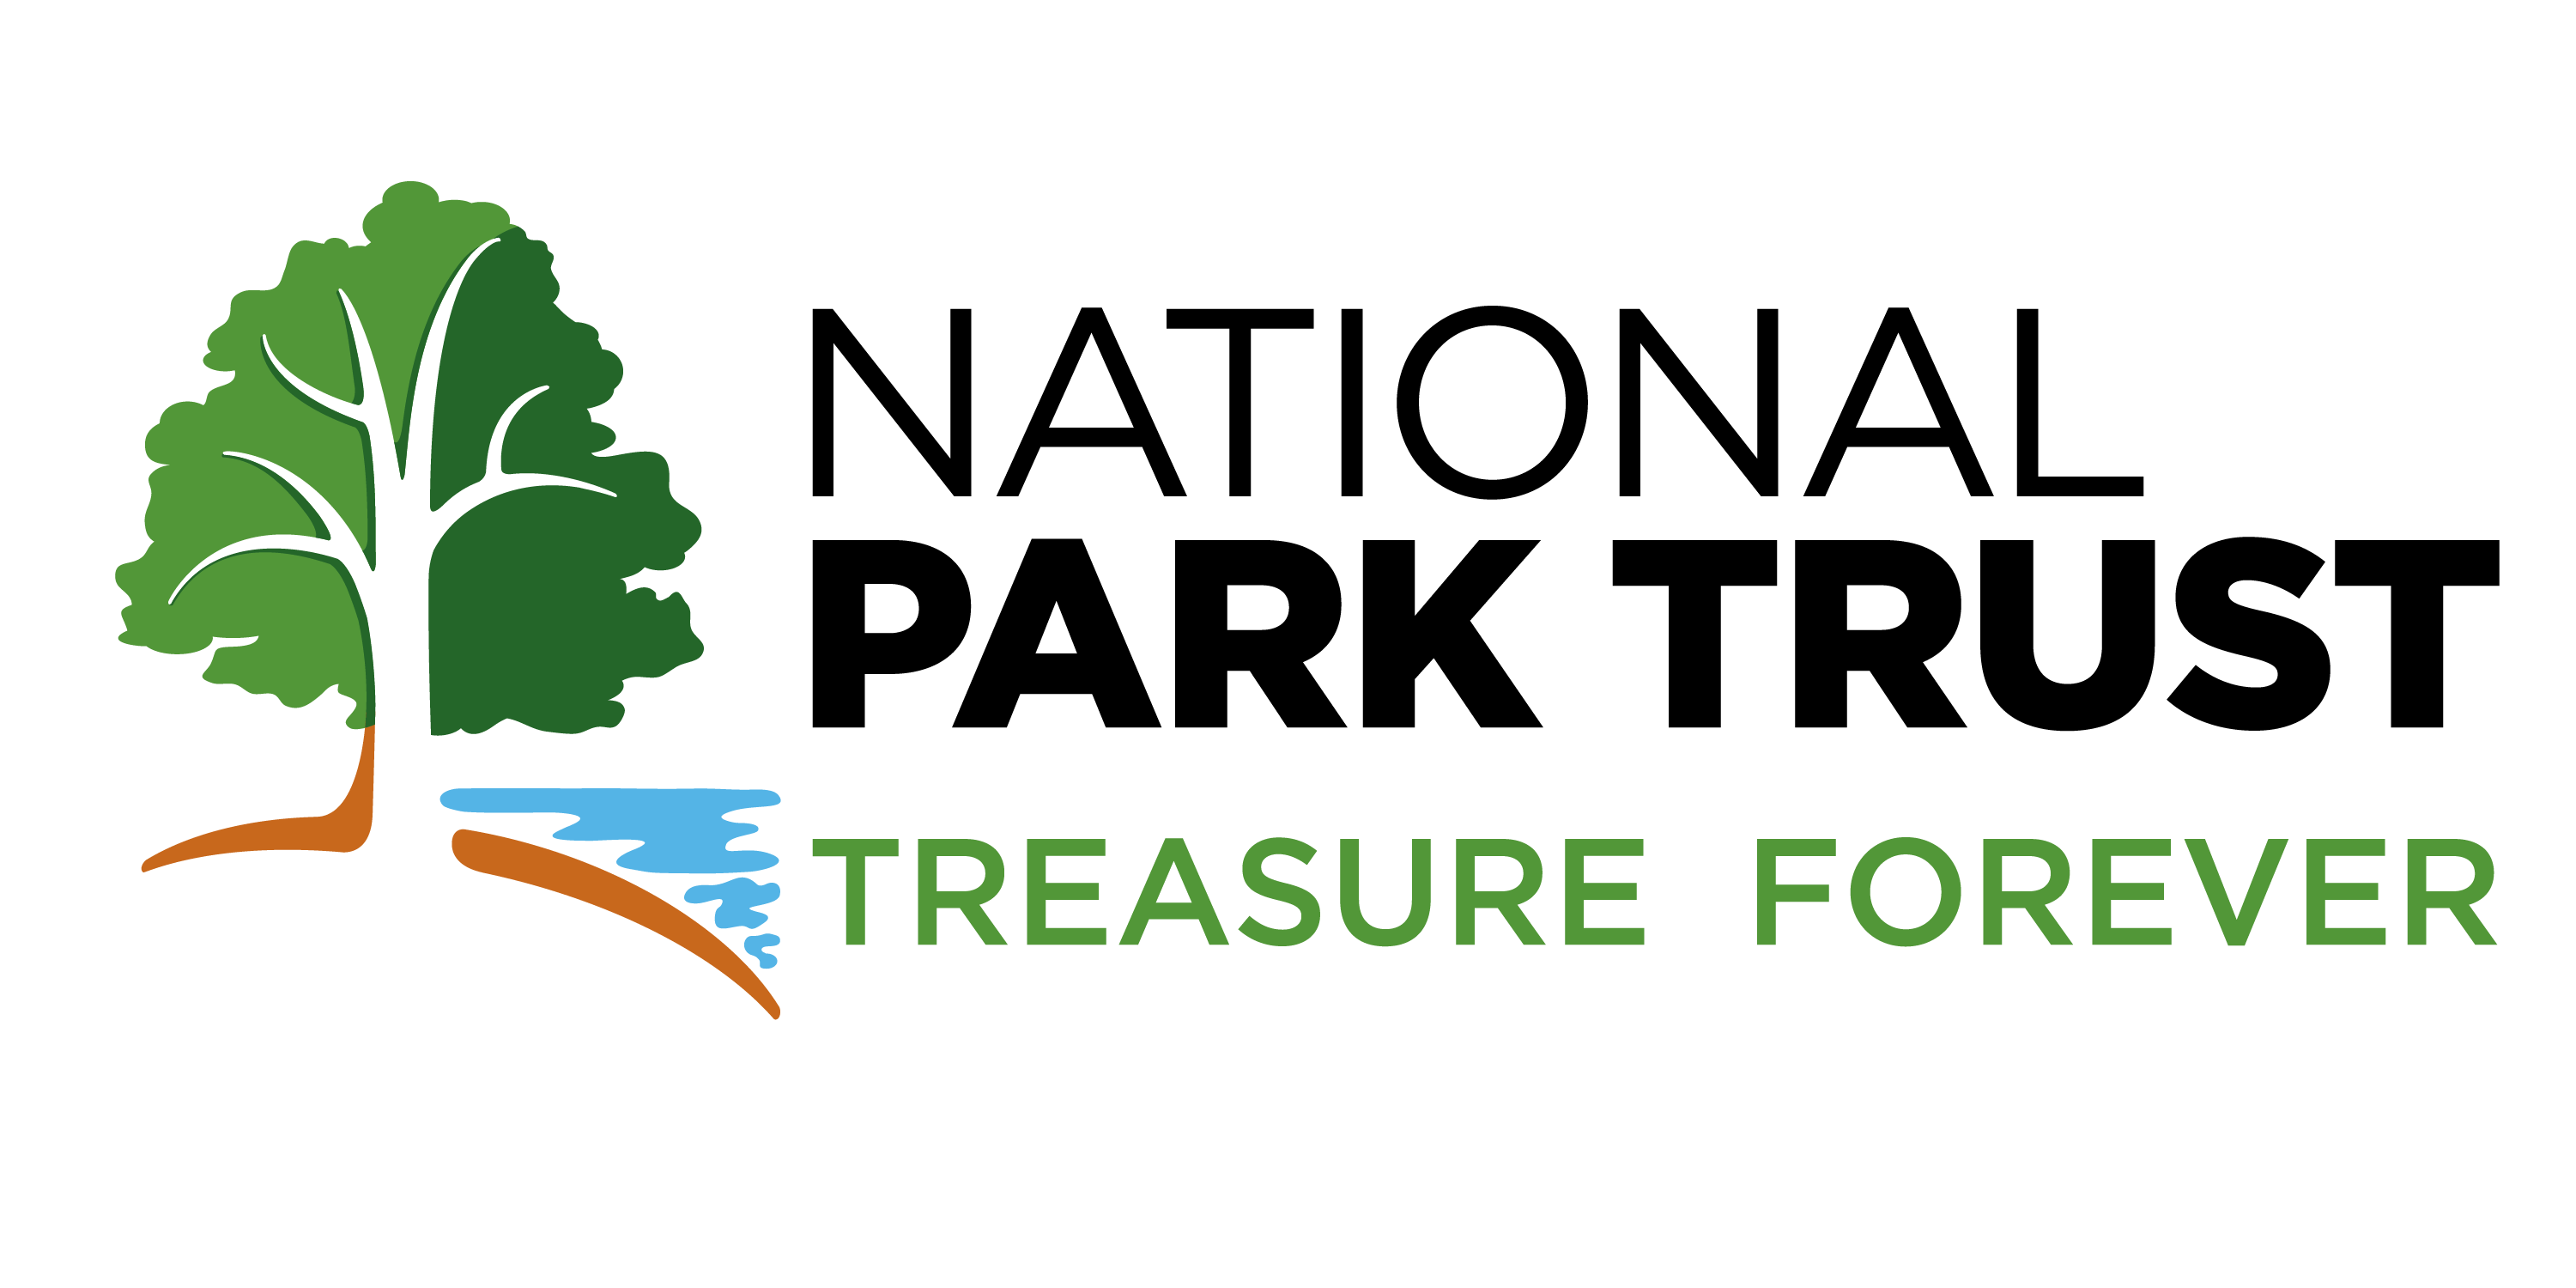 National Park Trust: Treasure Forever